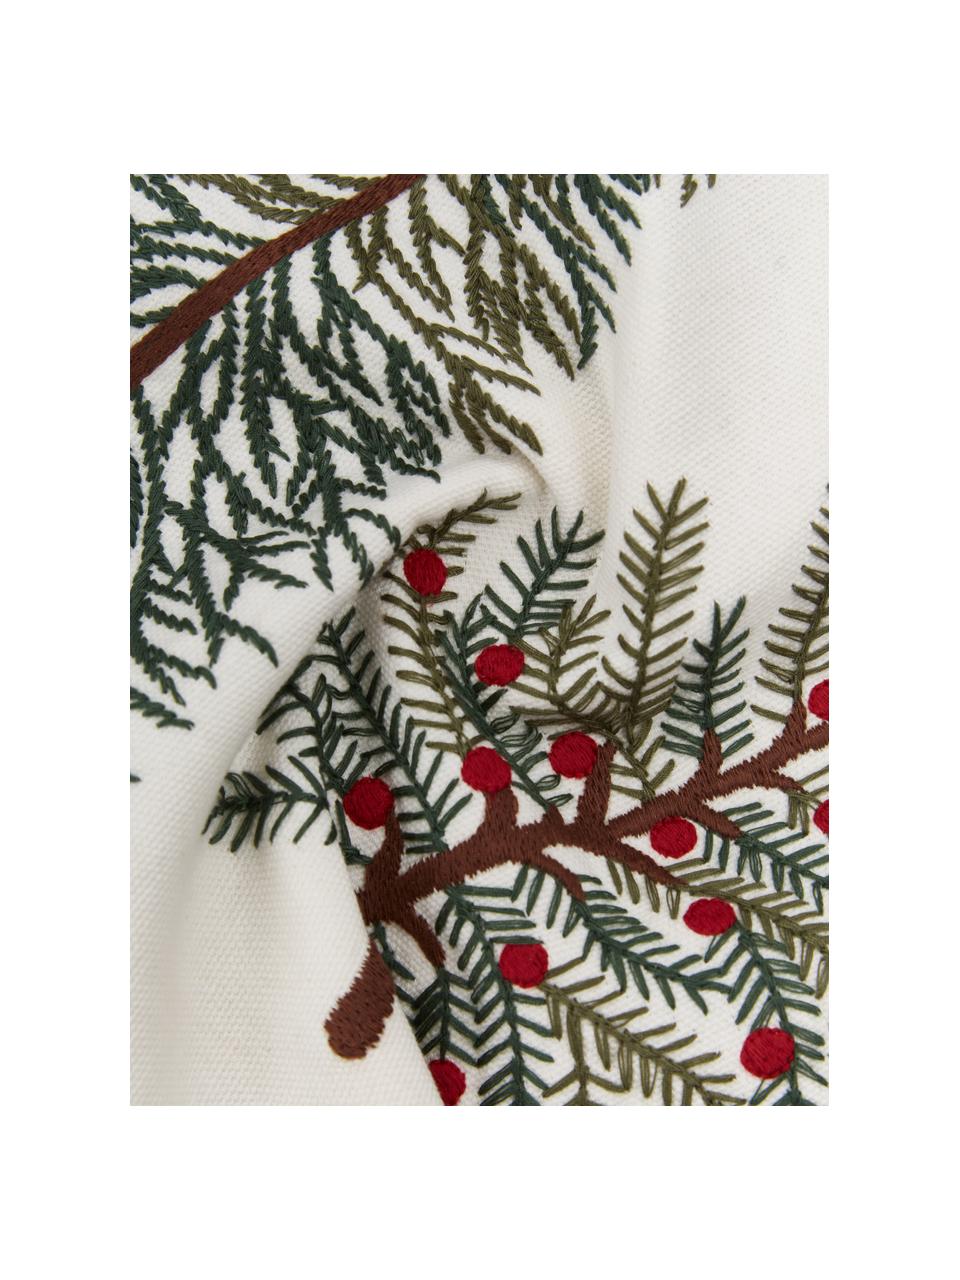 Copricuscino rettangolare ricamato con motivo invernale Fenna, 100% cotone, Verde scuro, bianco crema, rosso, Larg. 30 x Lung. 50 cm